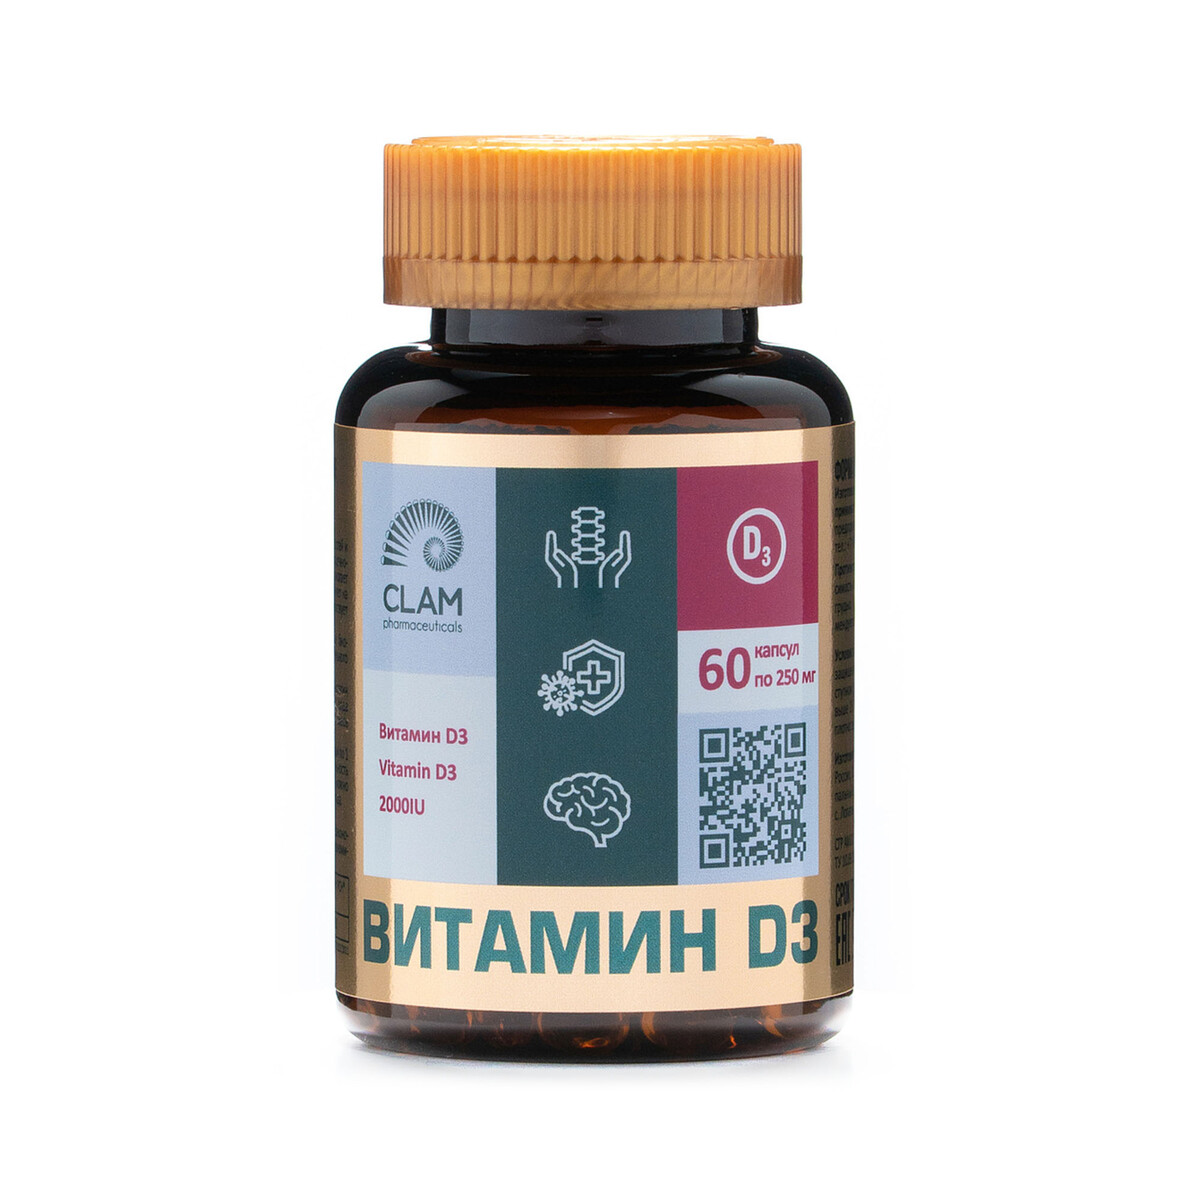 Витамин D3 2000МЕ - ANTI AGE, источник витаминов и минералов - для имунной системы, костей и суставов - 60 капсул